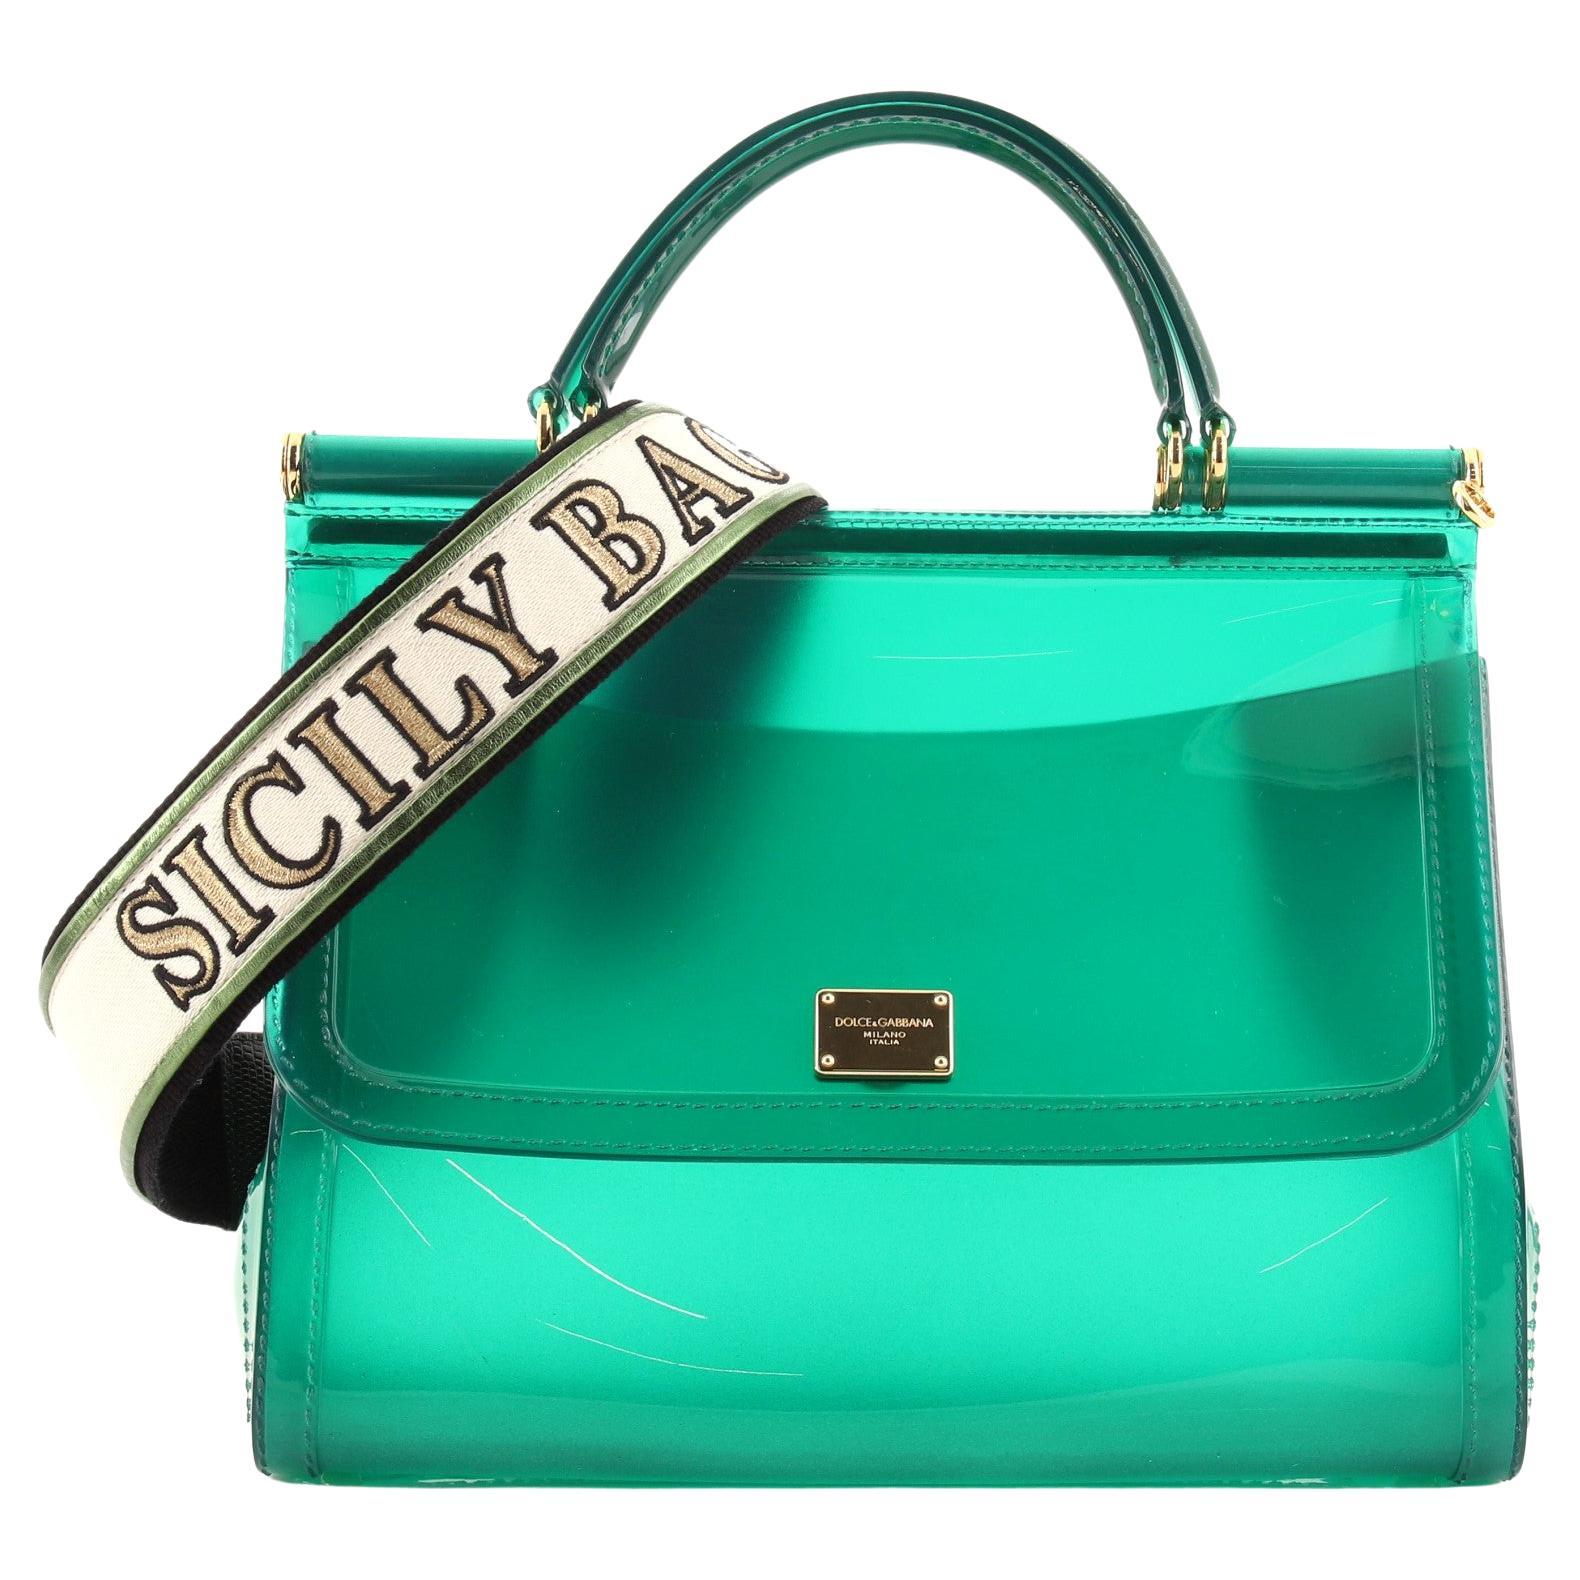 Dolce & Gabbana Green Bag